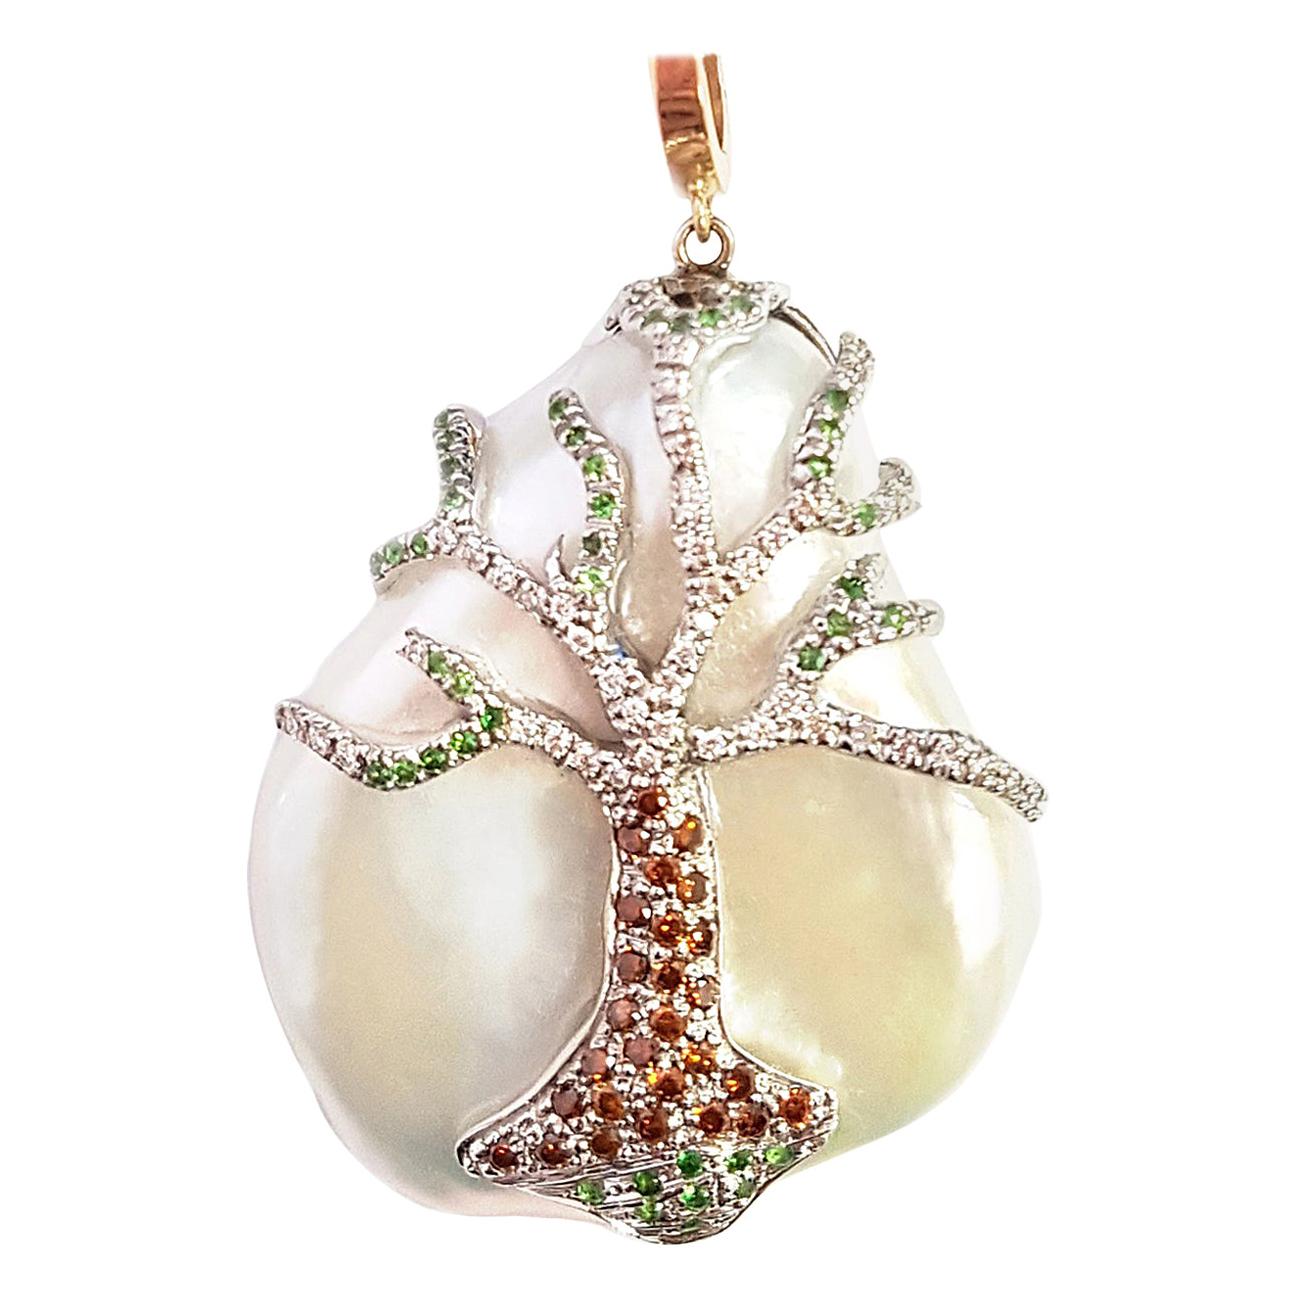 Whitingur, la grandeur de ce pendentif en perles massives et de sa chaîne en or blanc est une véritable merveille d'art et de créativité. Fabriqué avec une habileté exquise, ce pendentif est un chef-d'œuvre qui respire l'opulence et l'élégance.

Une